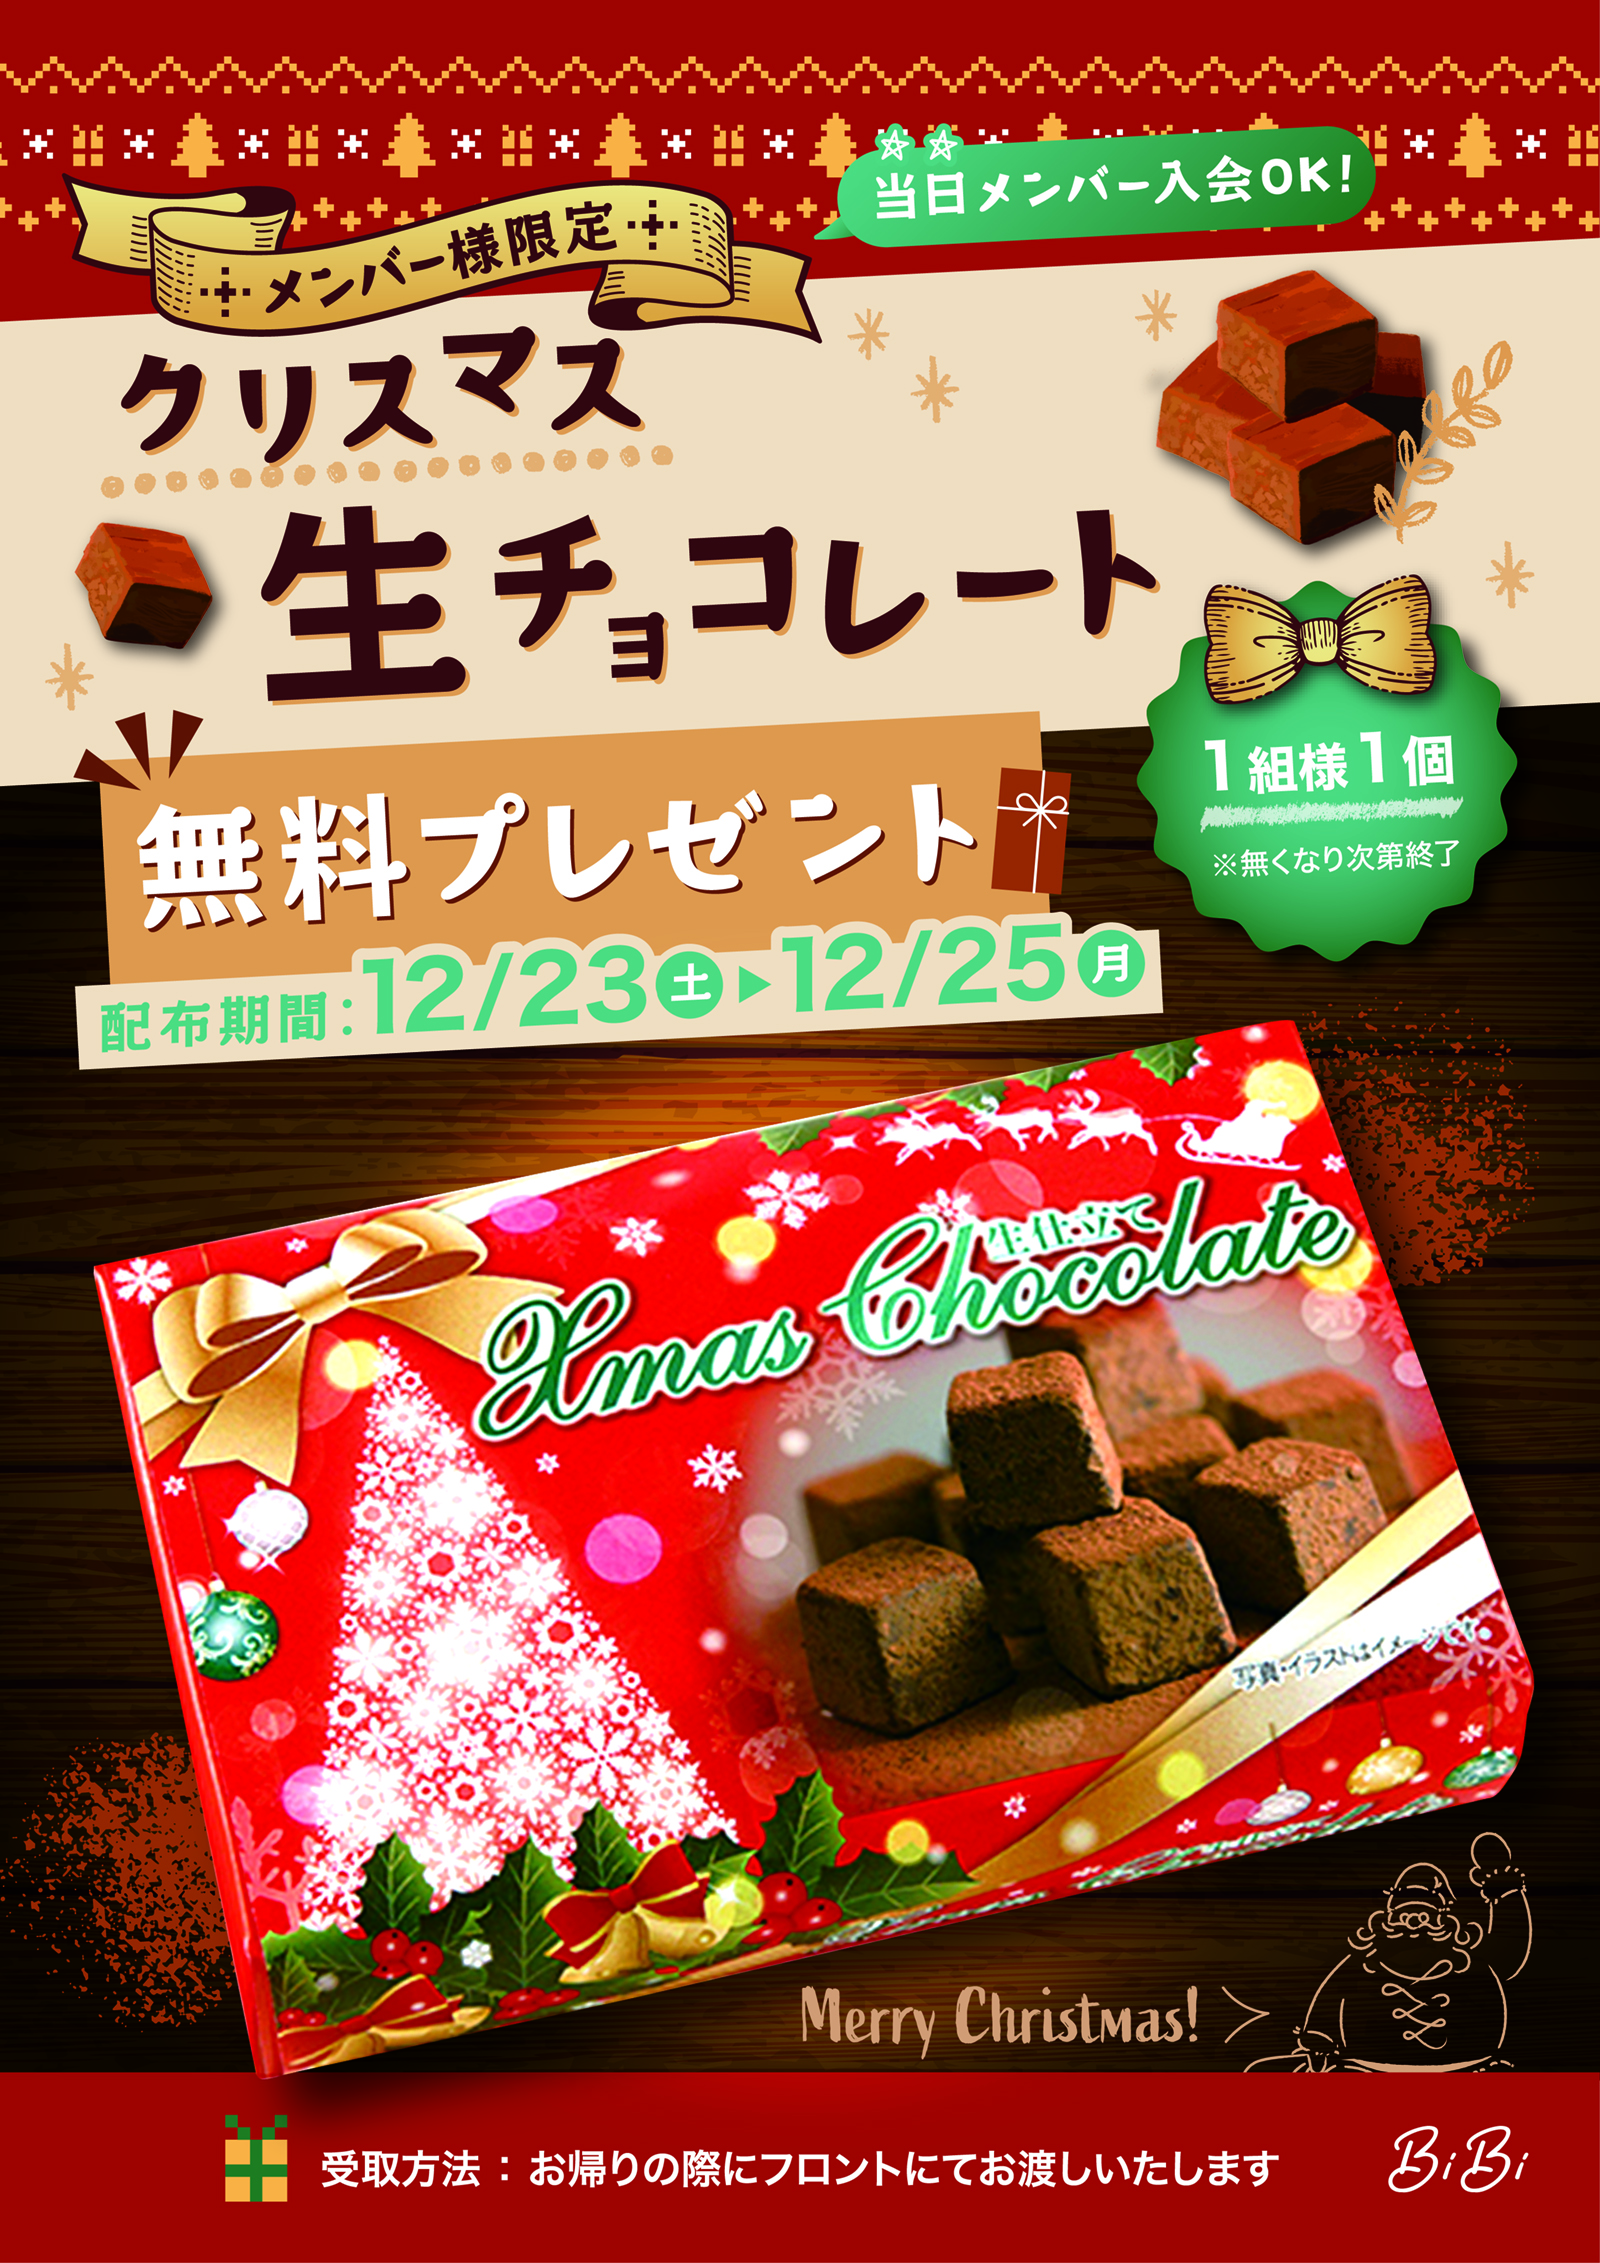 ☆クリスマス生チョコレートプレゼント☆